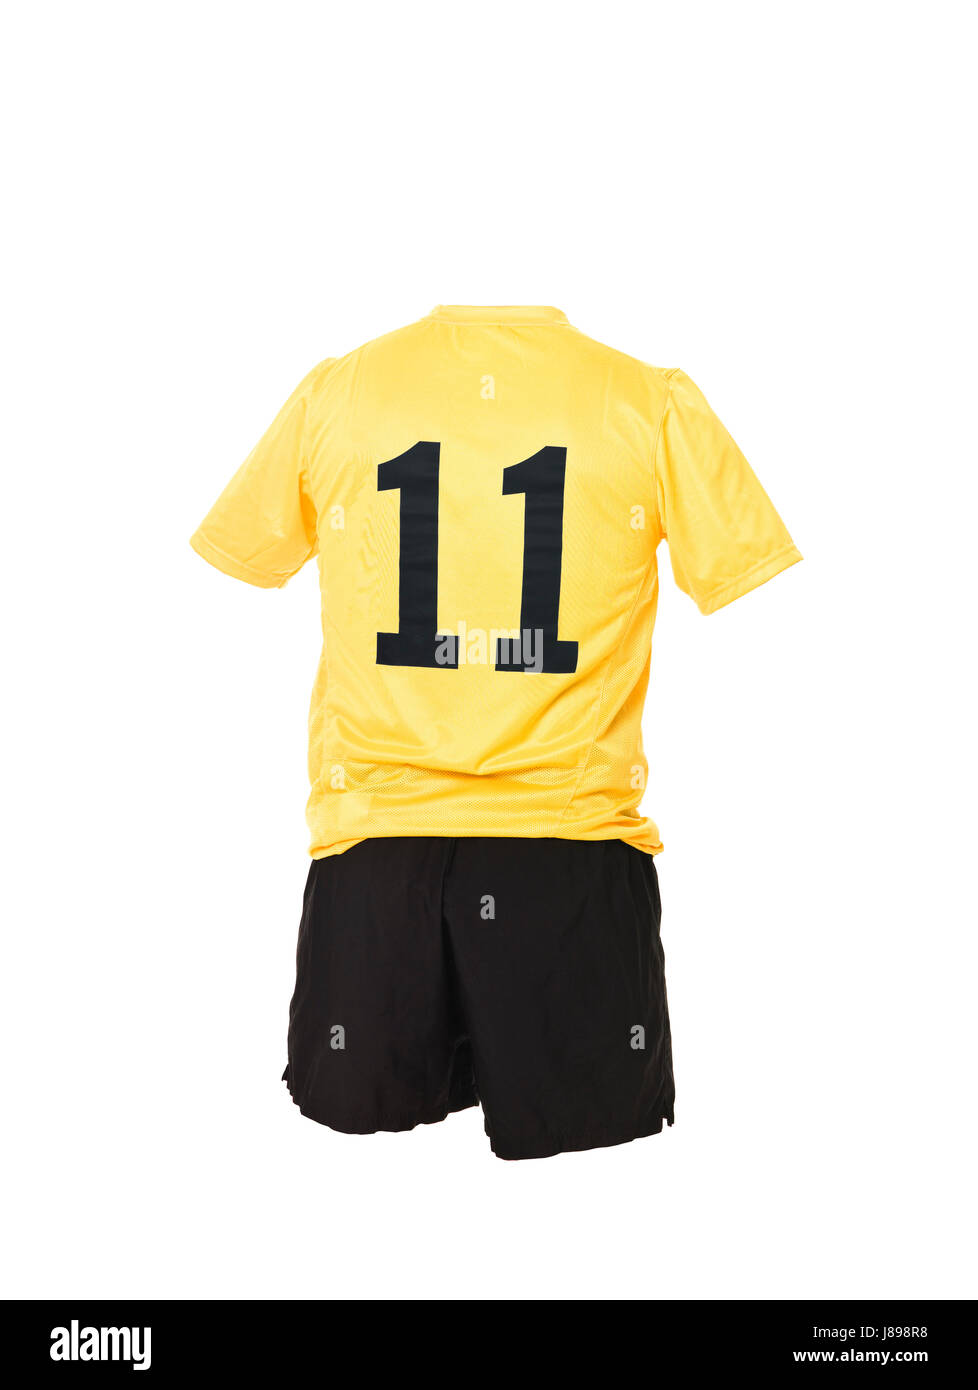 Maillot de foot avec numéro 11 isolé sur fond blanc Photo Stock - Alamy